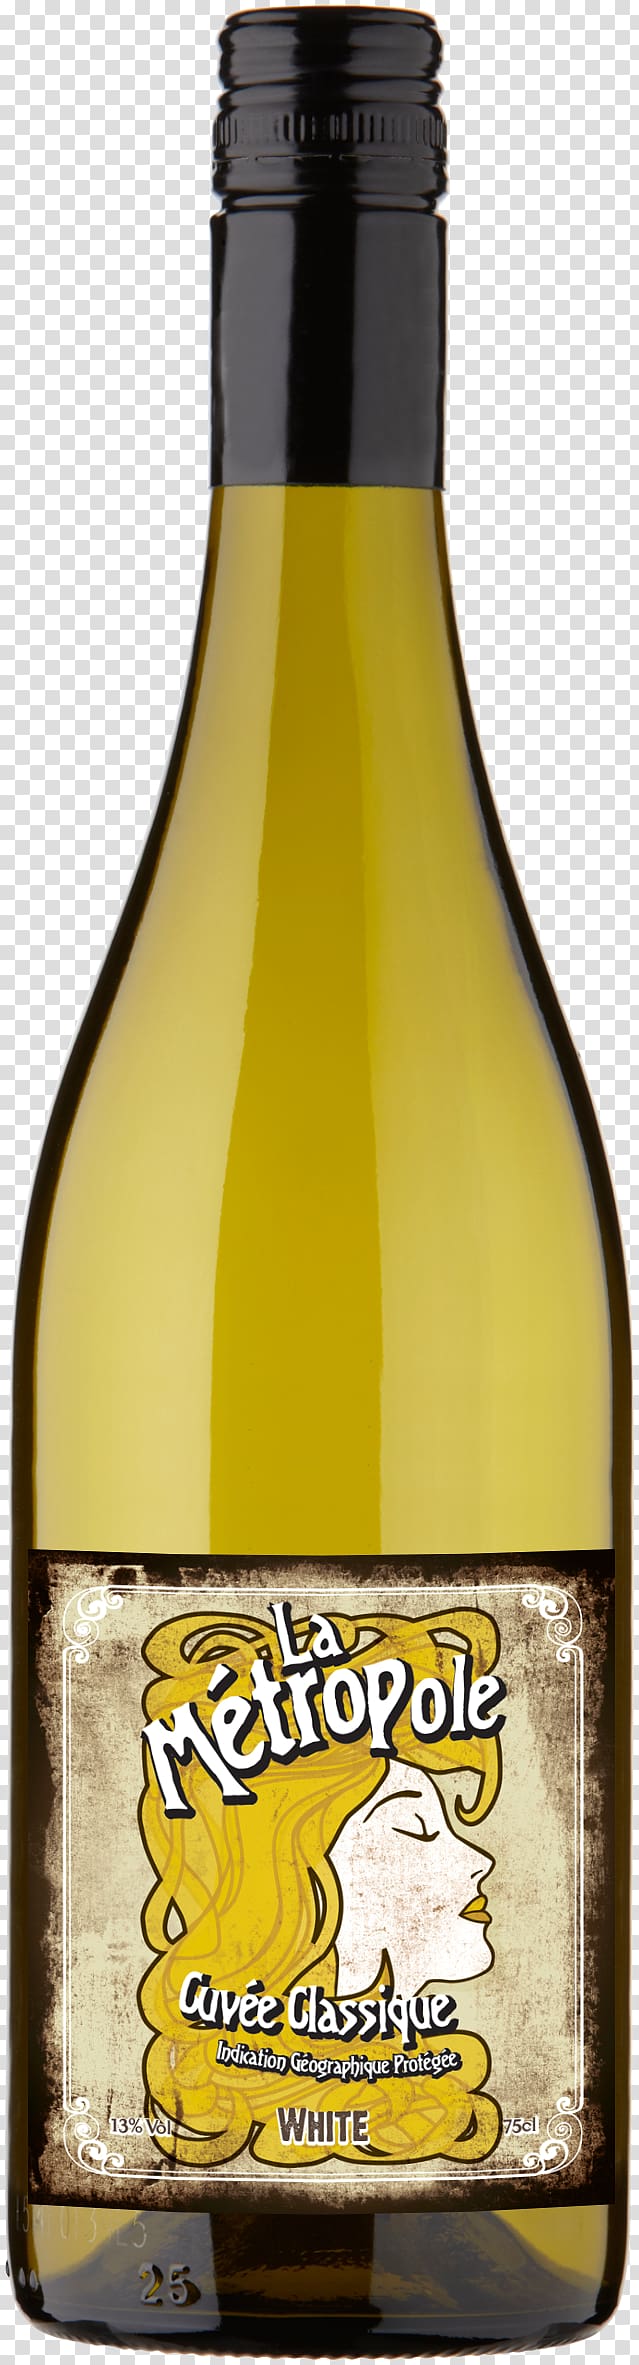 Chardonnay White wine Sauvignon blanc Cabernet Sauvignon, Vintage Wine Grapes France transparent background PNG clipart